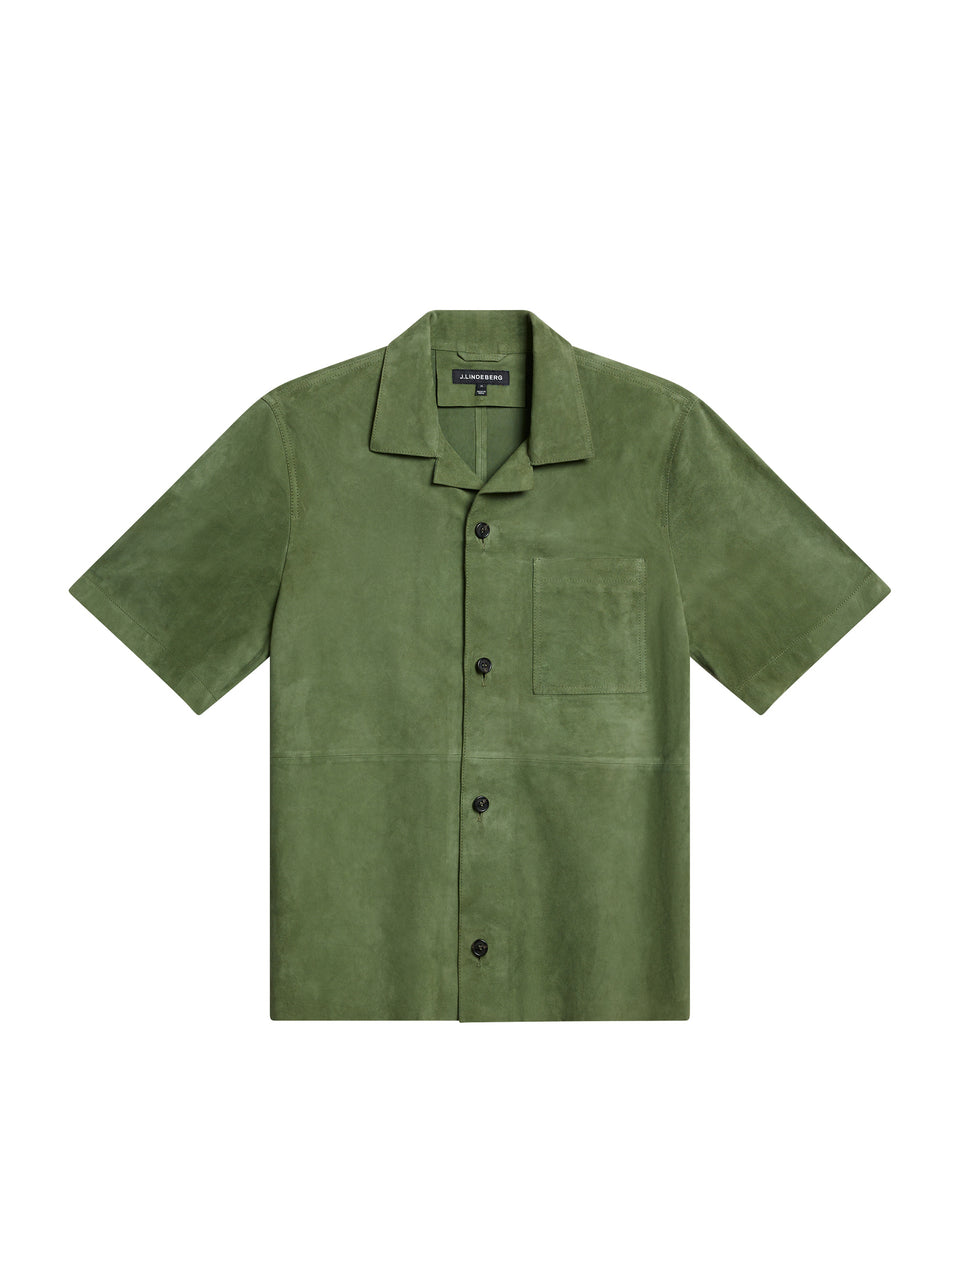 Scottie Suede Overshirt / Oil Green